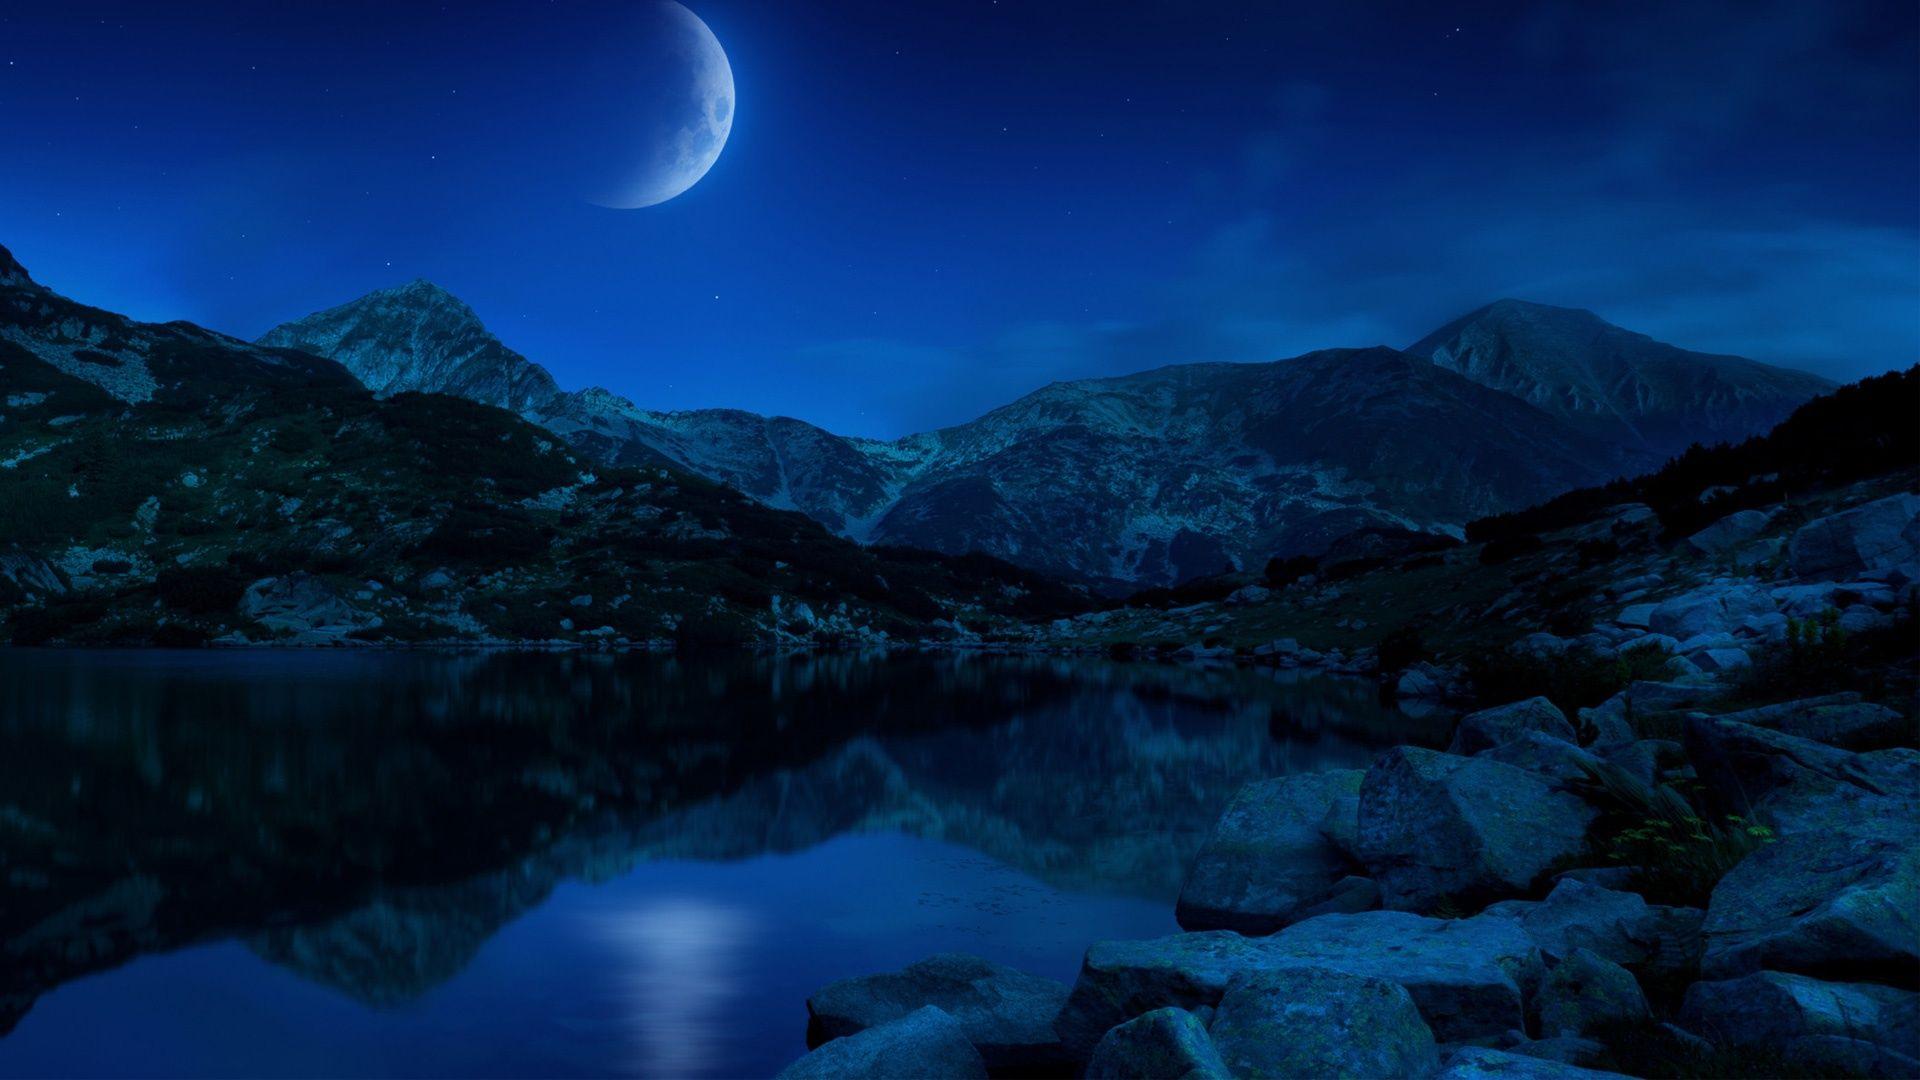 Night Half Moon Mountains Lake Bulgaria Wallpaper in jpg format